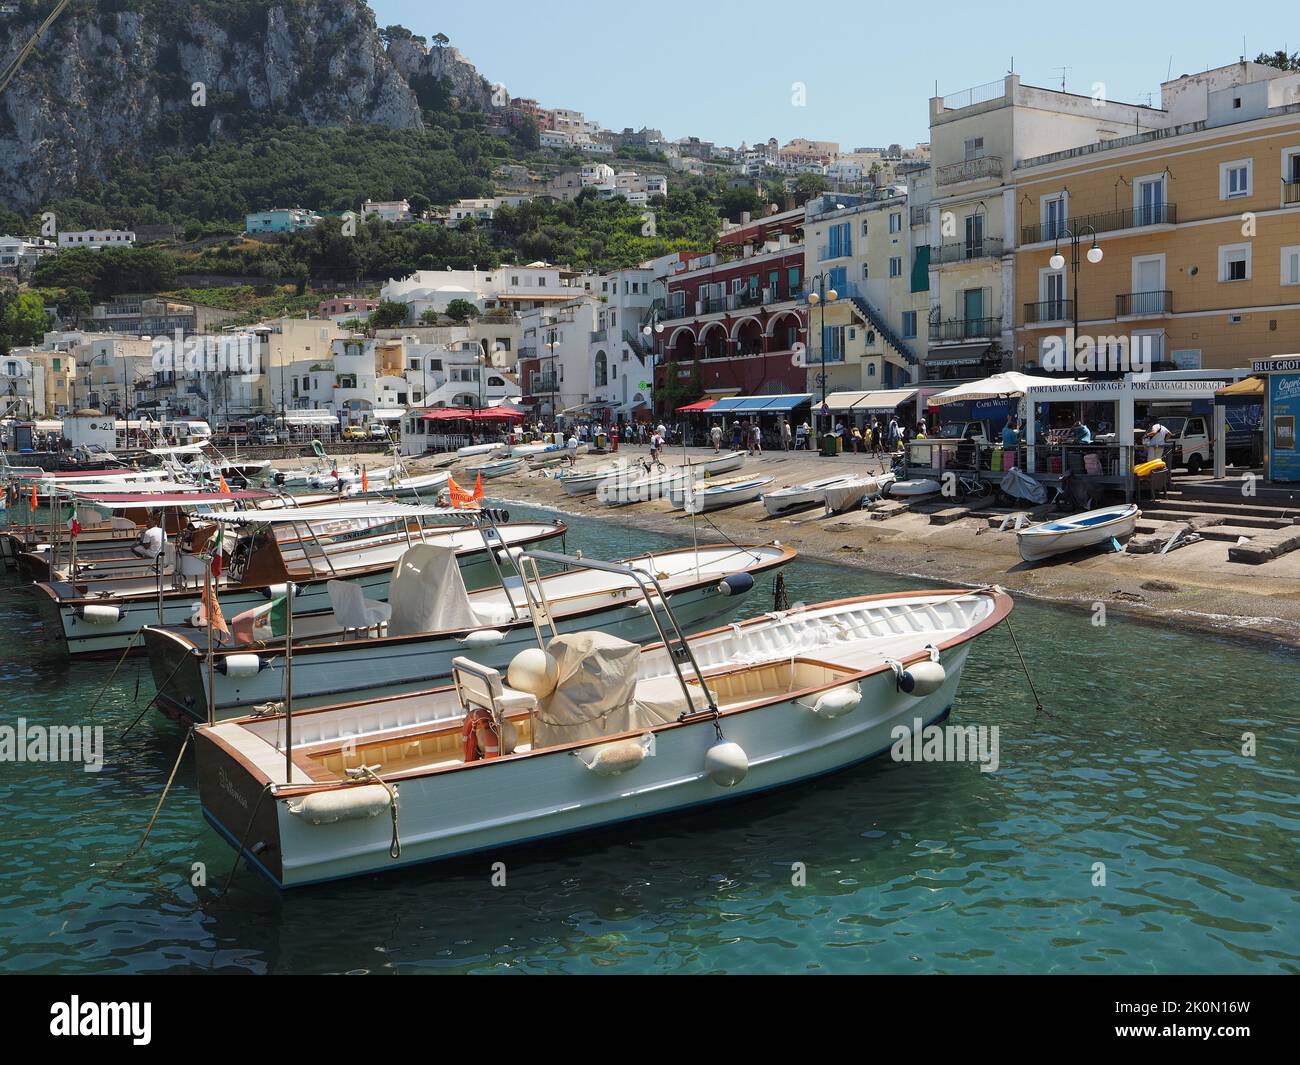 Porto di Capri con molte barche turistiche che vengono utilizzate per visitare la grotta azzurro o per fare un giro dell'isola. Capri, Campania, Italia Foto Stock